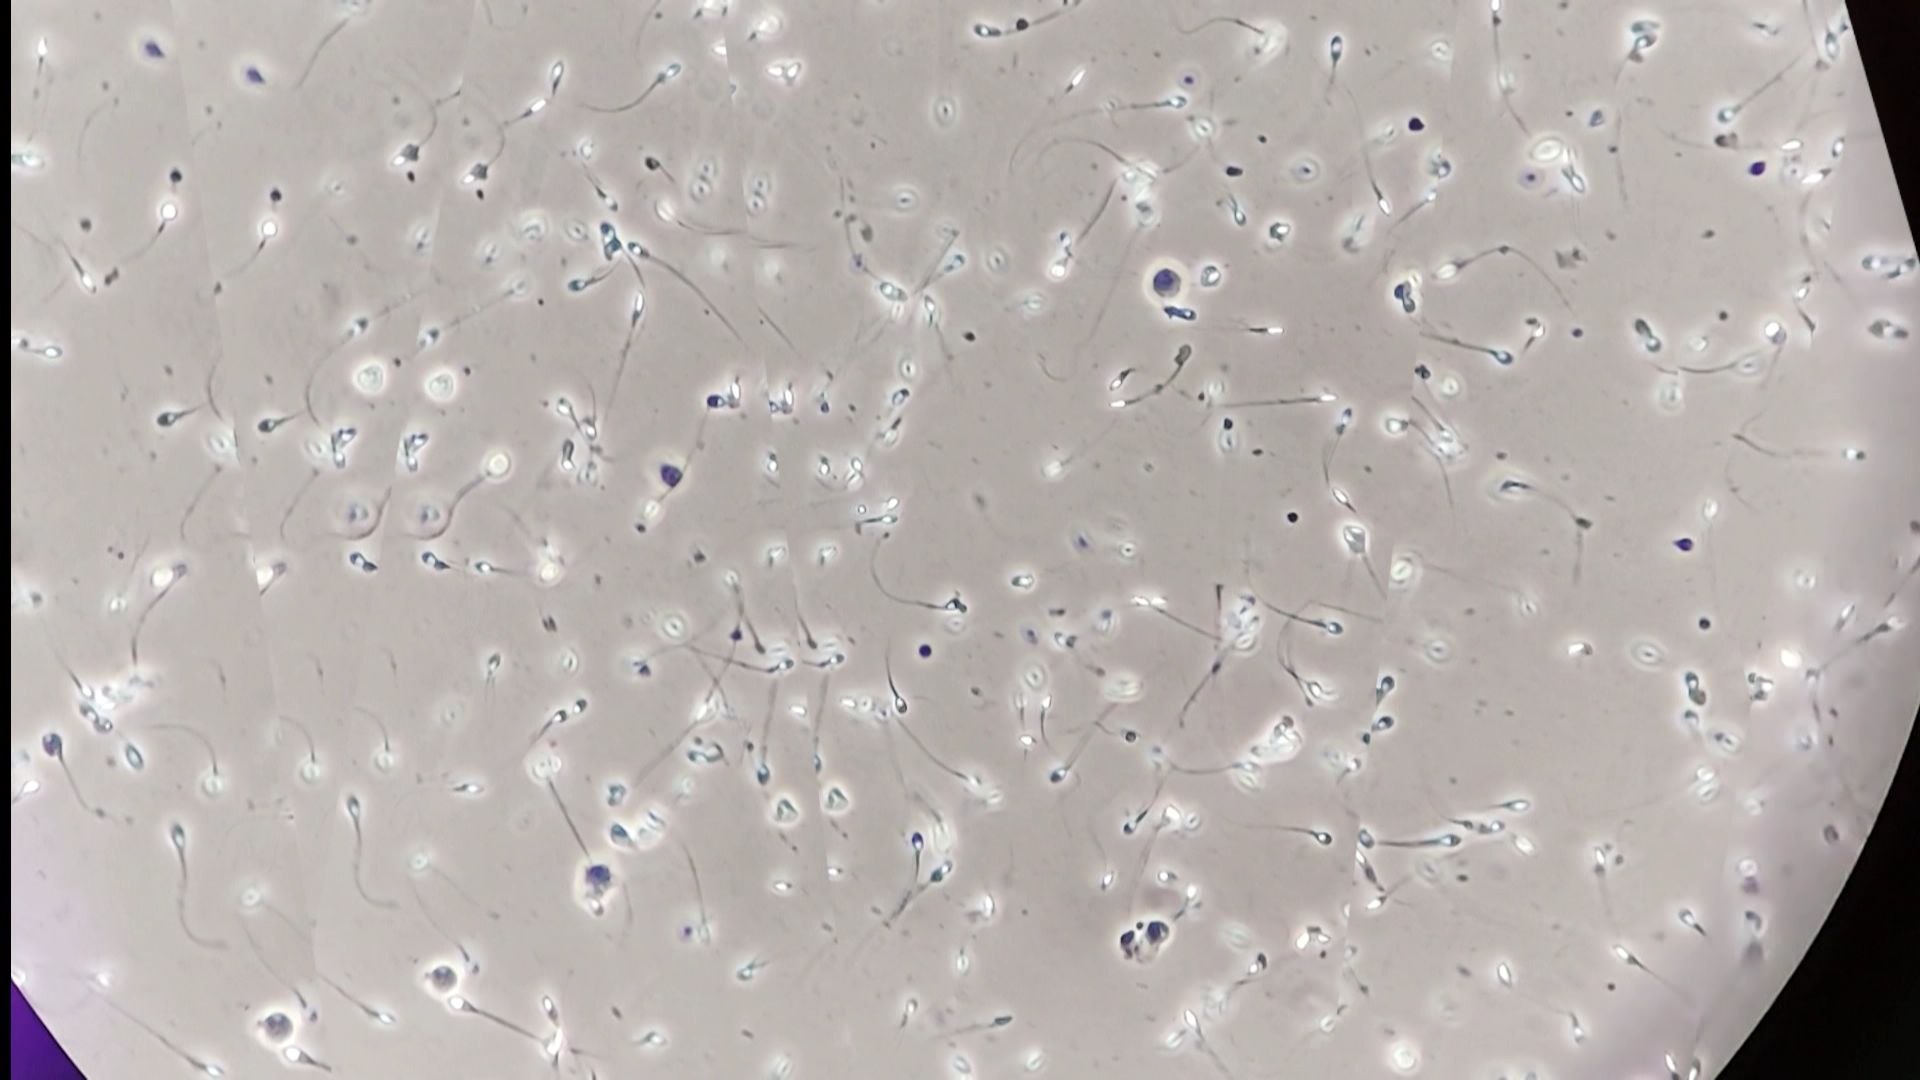 Des spermatozoïdes observés aux microscopes.